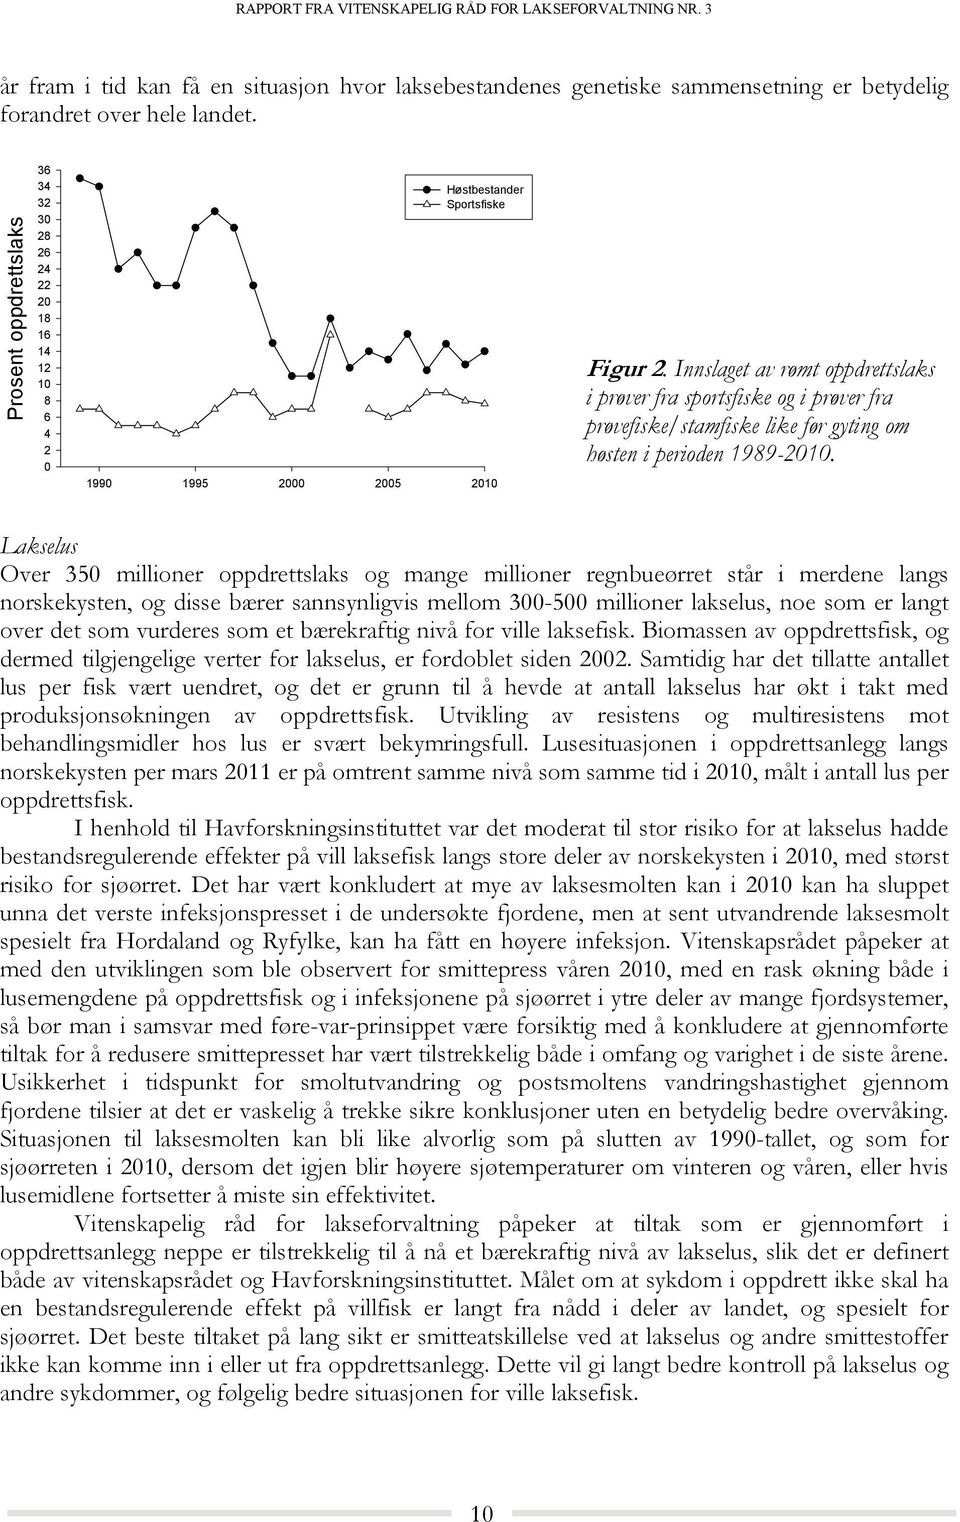 Innslaget av rømt oppdrettslaks i prøver fra sportsfiske og i prøver fra prøvefiske/stamfiske like før gyting om høsten i perioden 1989-2010.